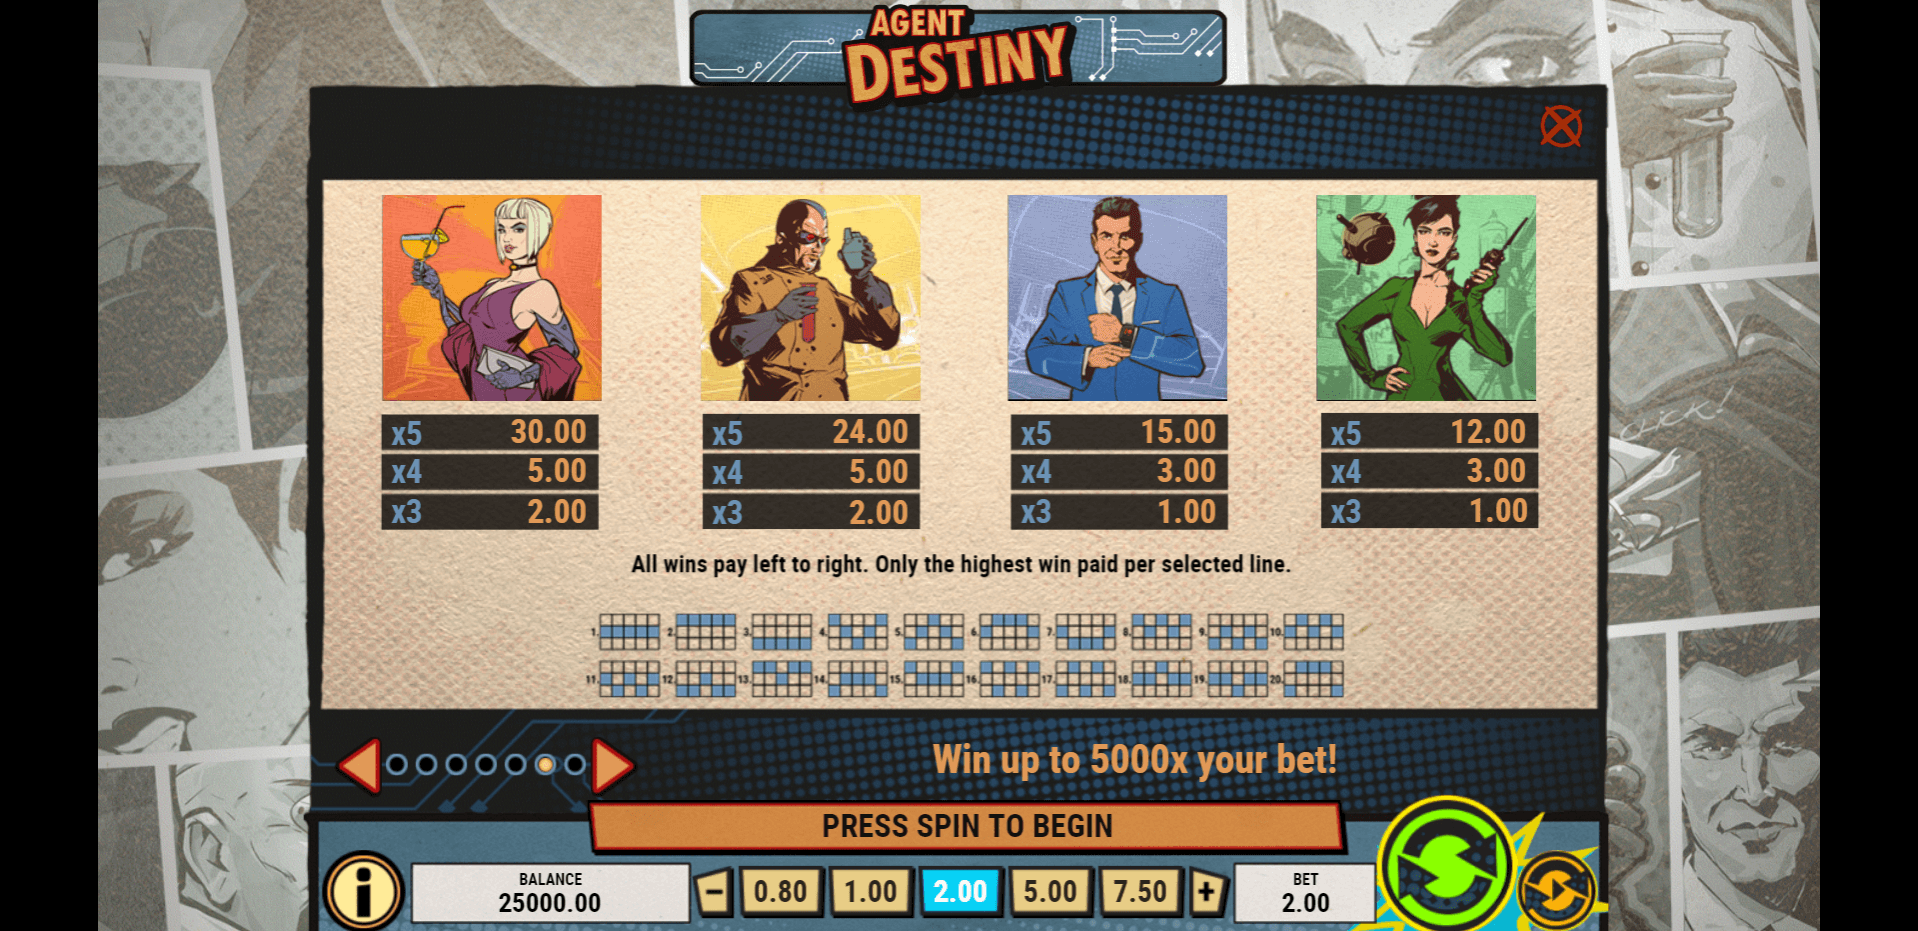 agent destiny slot machine detail image 5